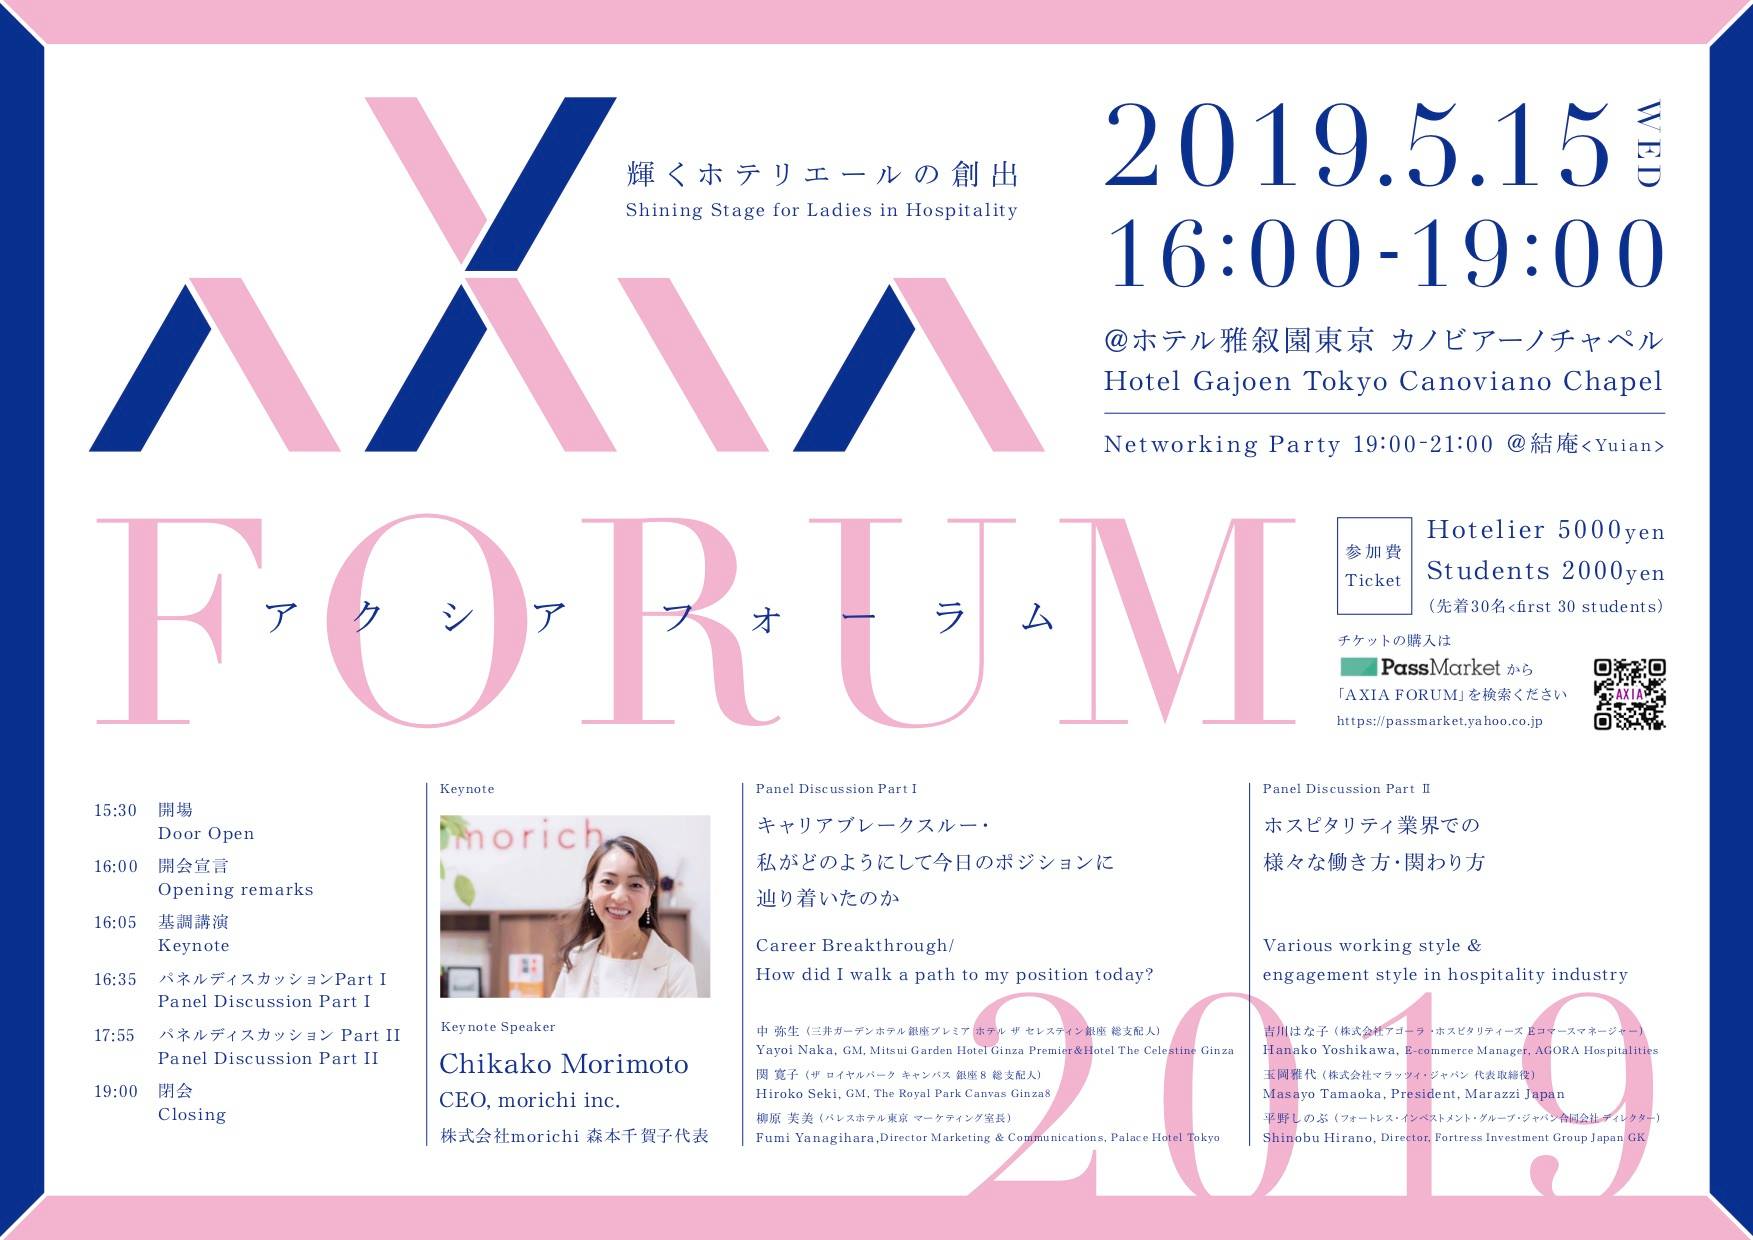 【2019.05.15】輝くホテリエールAXIA FORUM 2019主催セミナー